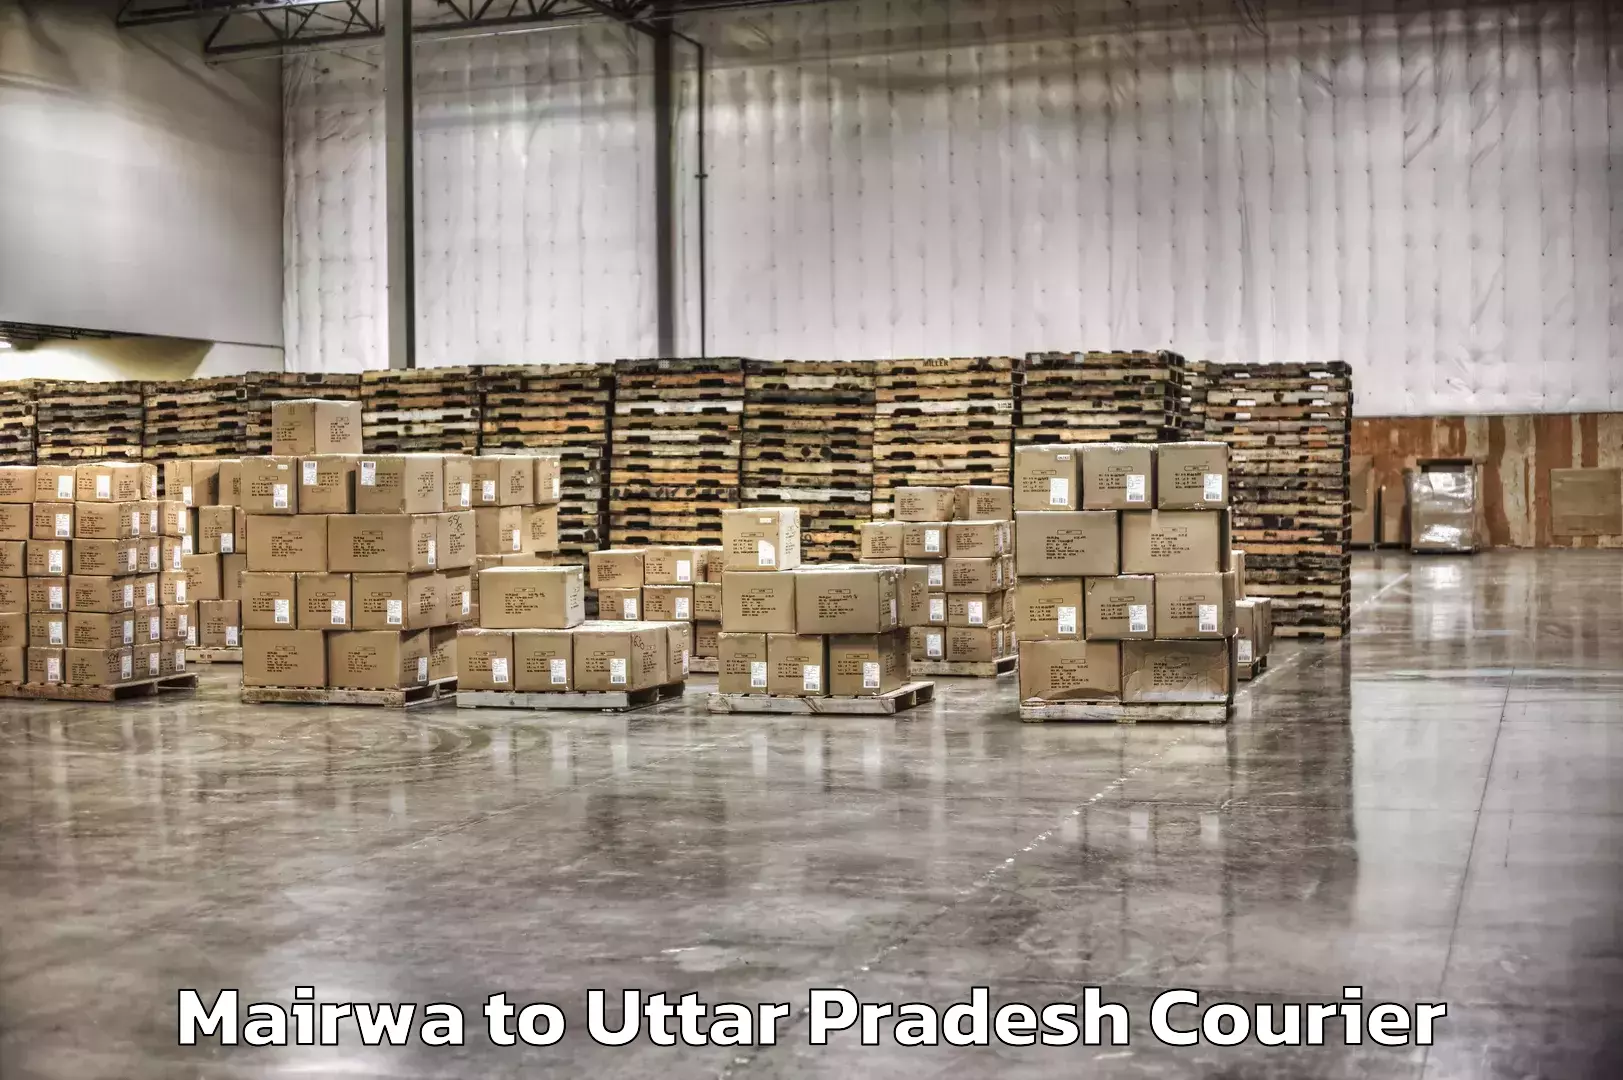 Express courier capabilities Mairwa to Uttar Pradesh